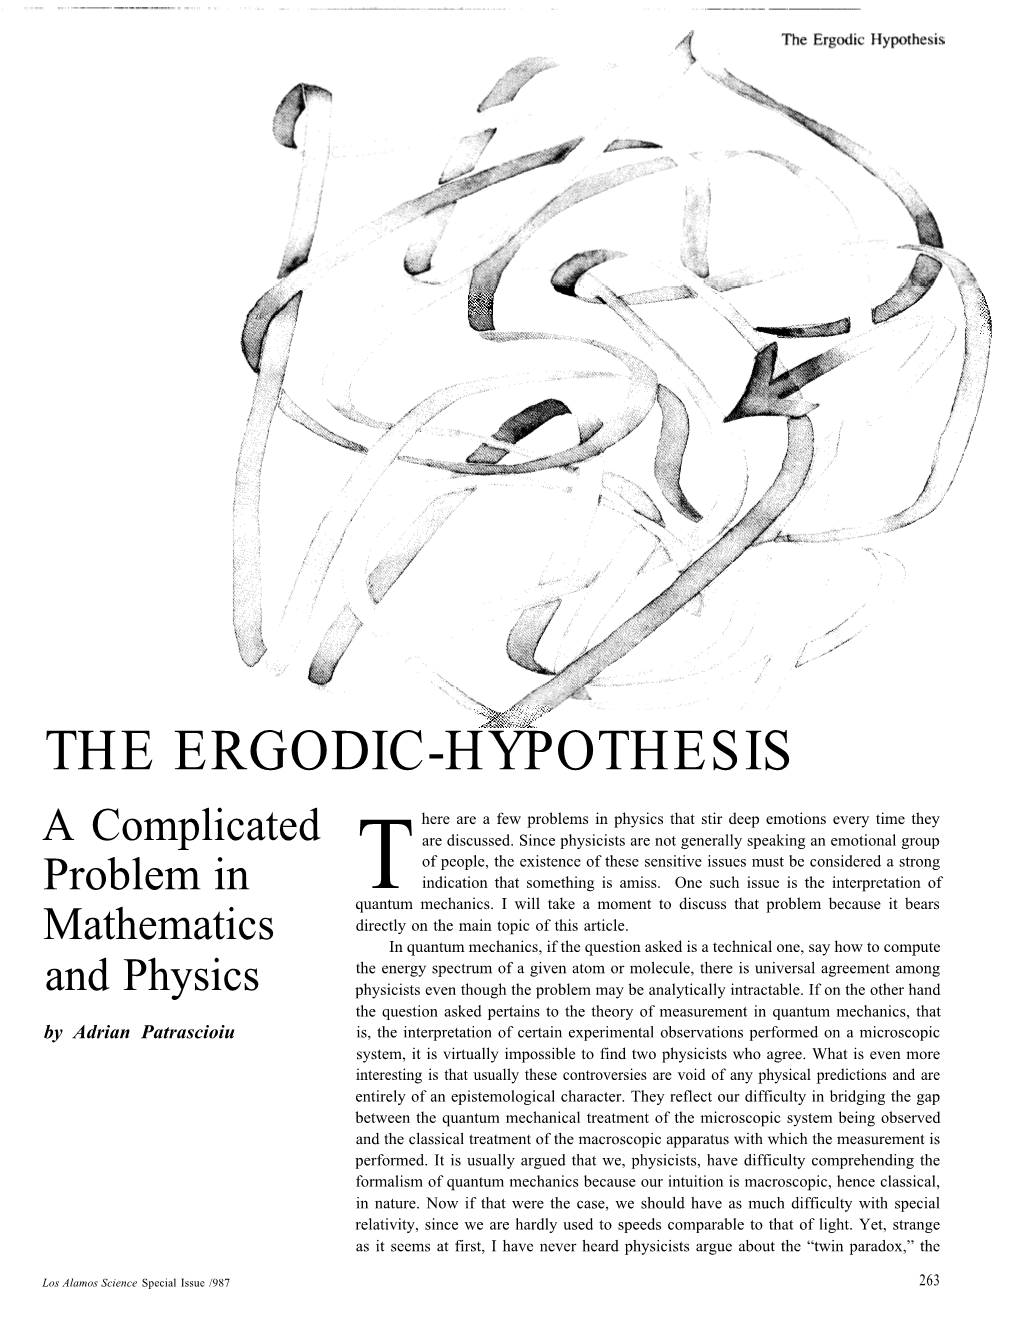 The Ergodic-Hypothesis